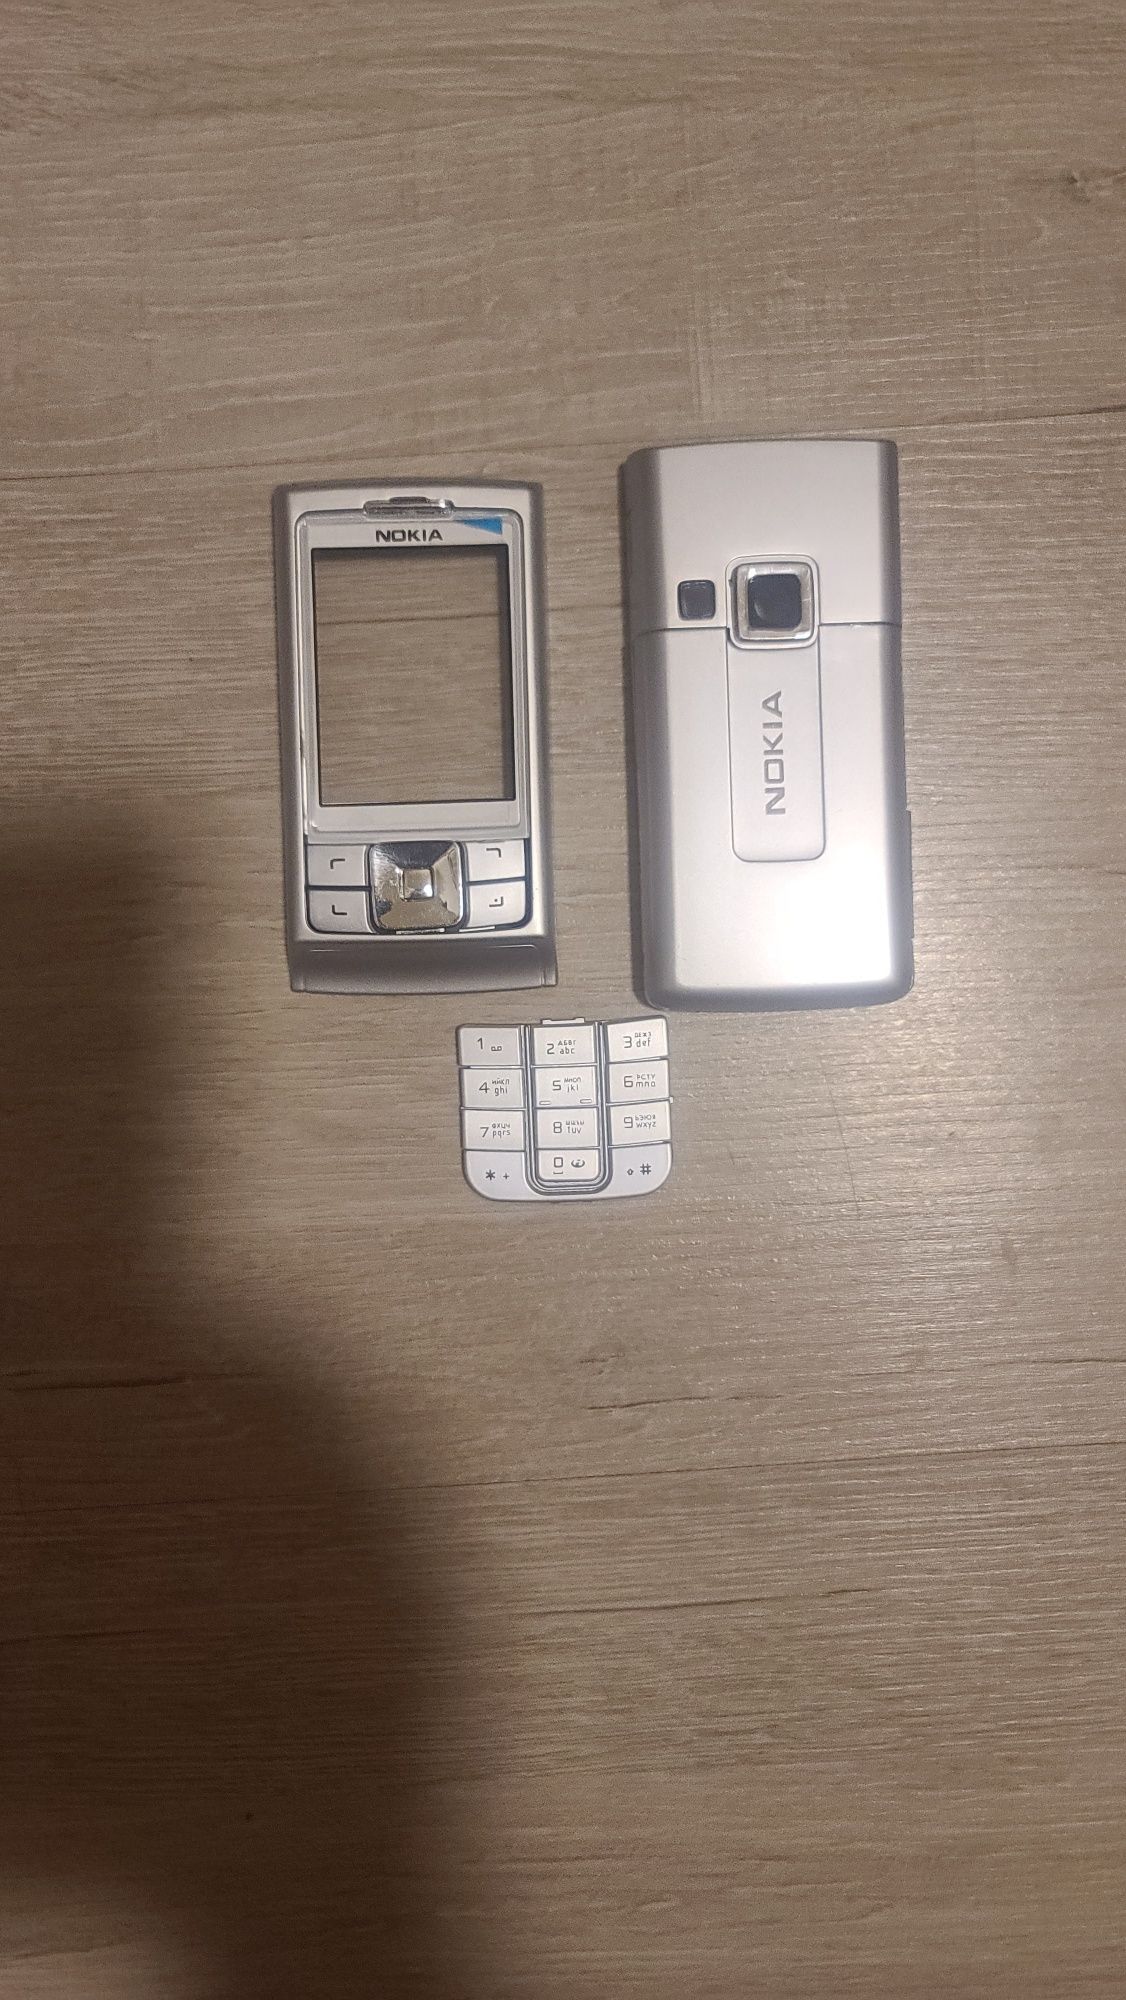 Корпус Nokia 6270